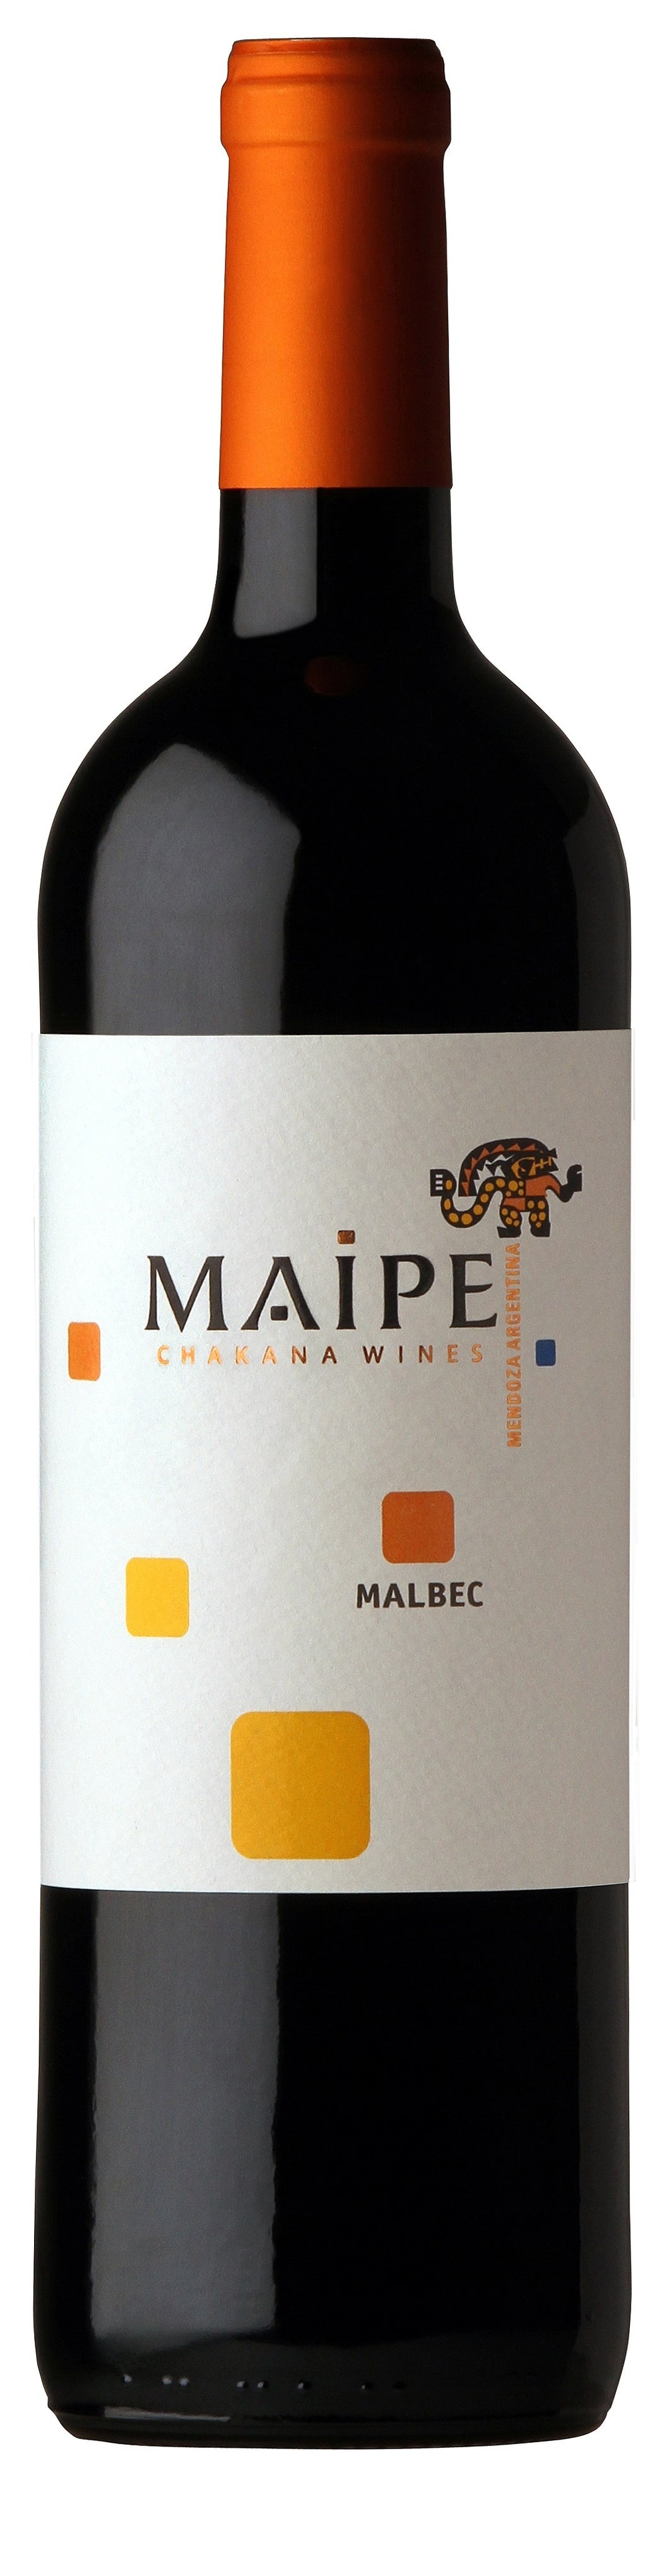 Maipe Malbec 2018